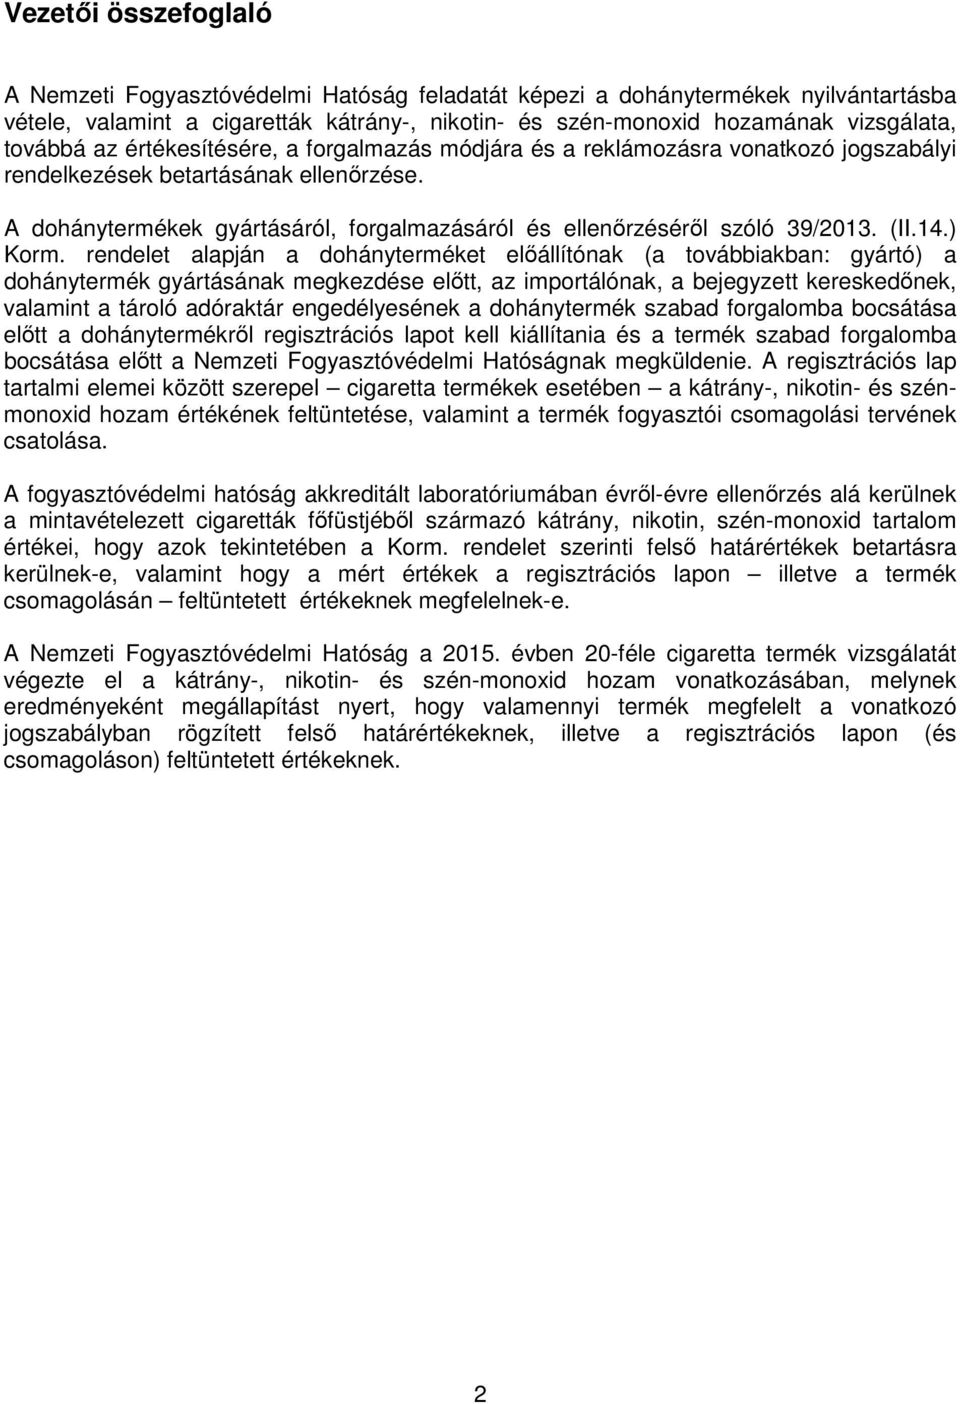 A dohánytermékek gyártásáról, forgalmazásáról és ellenőrzéséről szóló 39/2013. (II.14.) Korm.